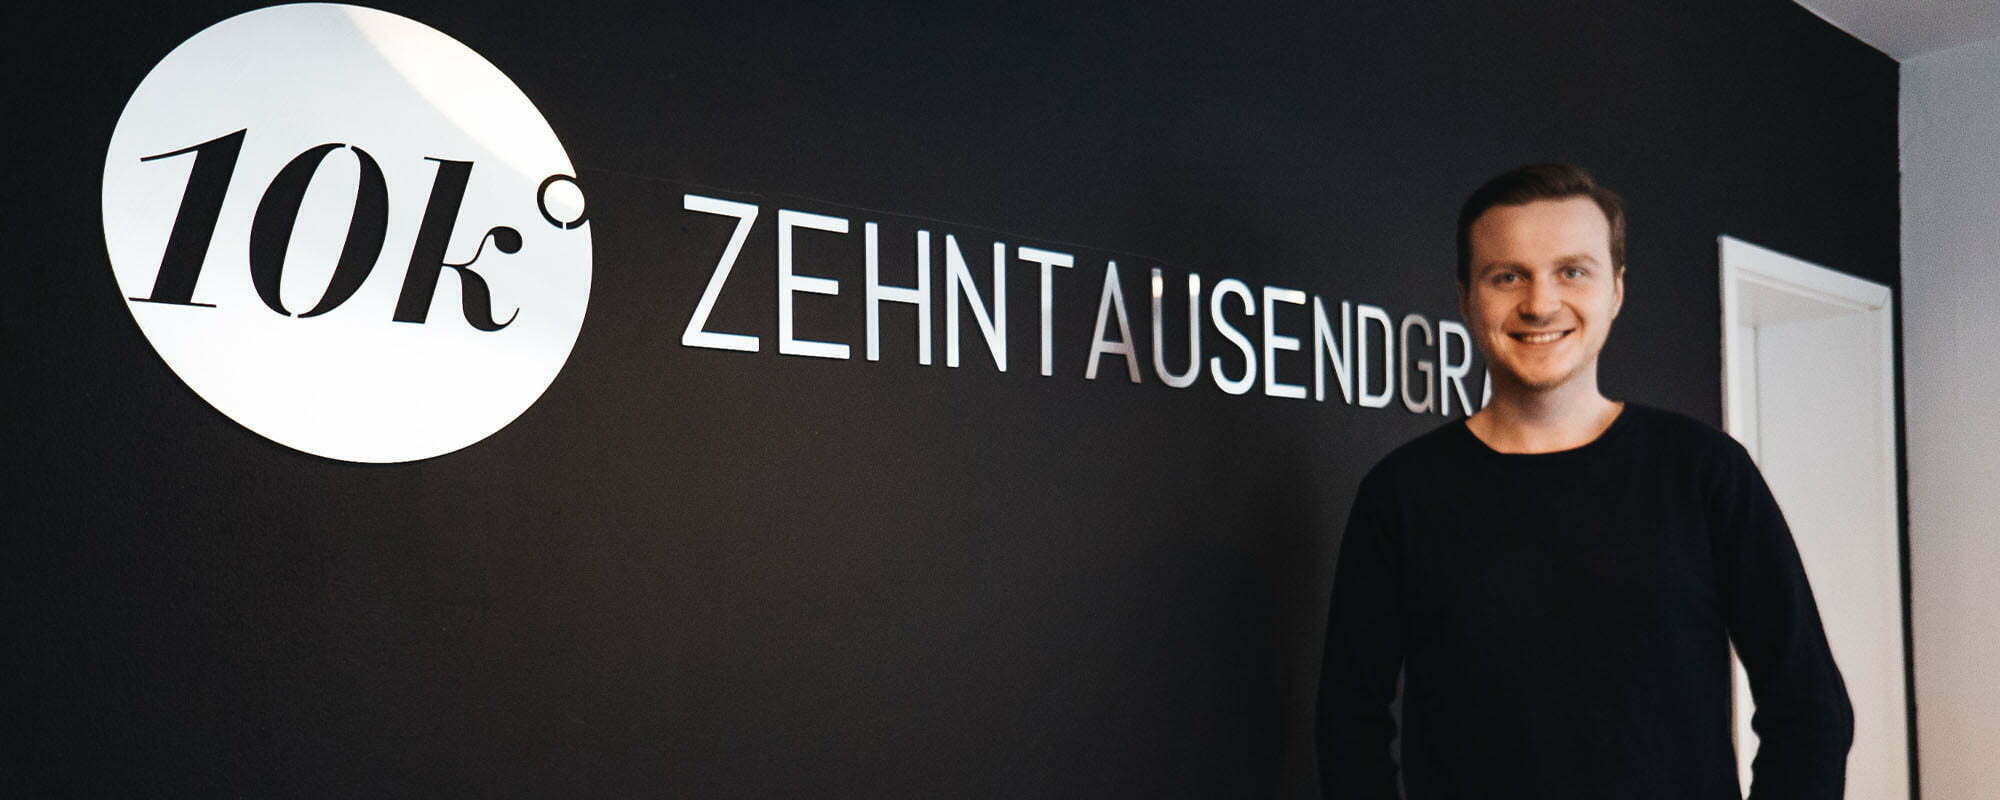 Zehntausendgrad Videowerbung GmbH Augsburg